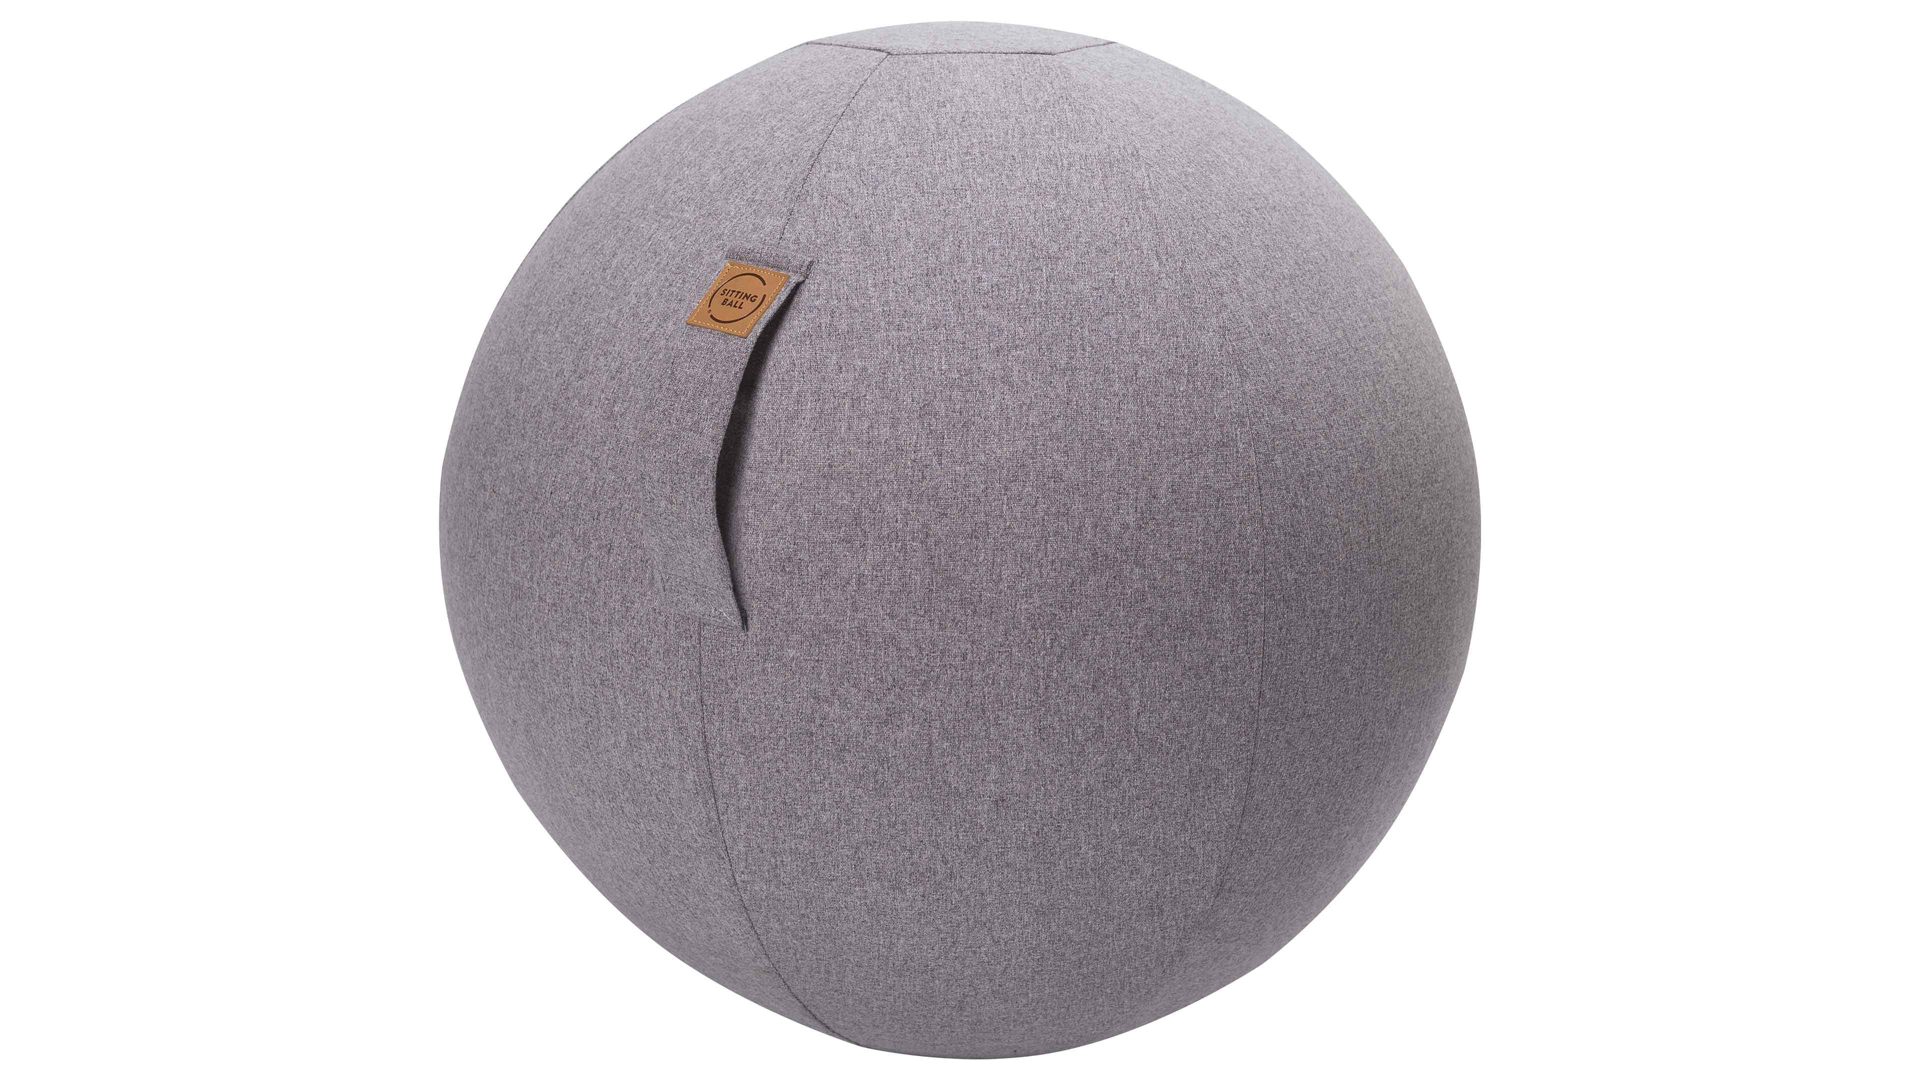 Sitzball Magma sitting point aus Kunstfaser in Grau SITTING BALL® Felt grauer Bezug – Durchmesser ca. 65 cm